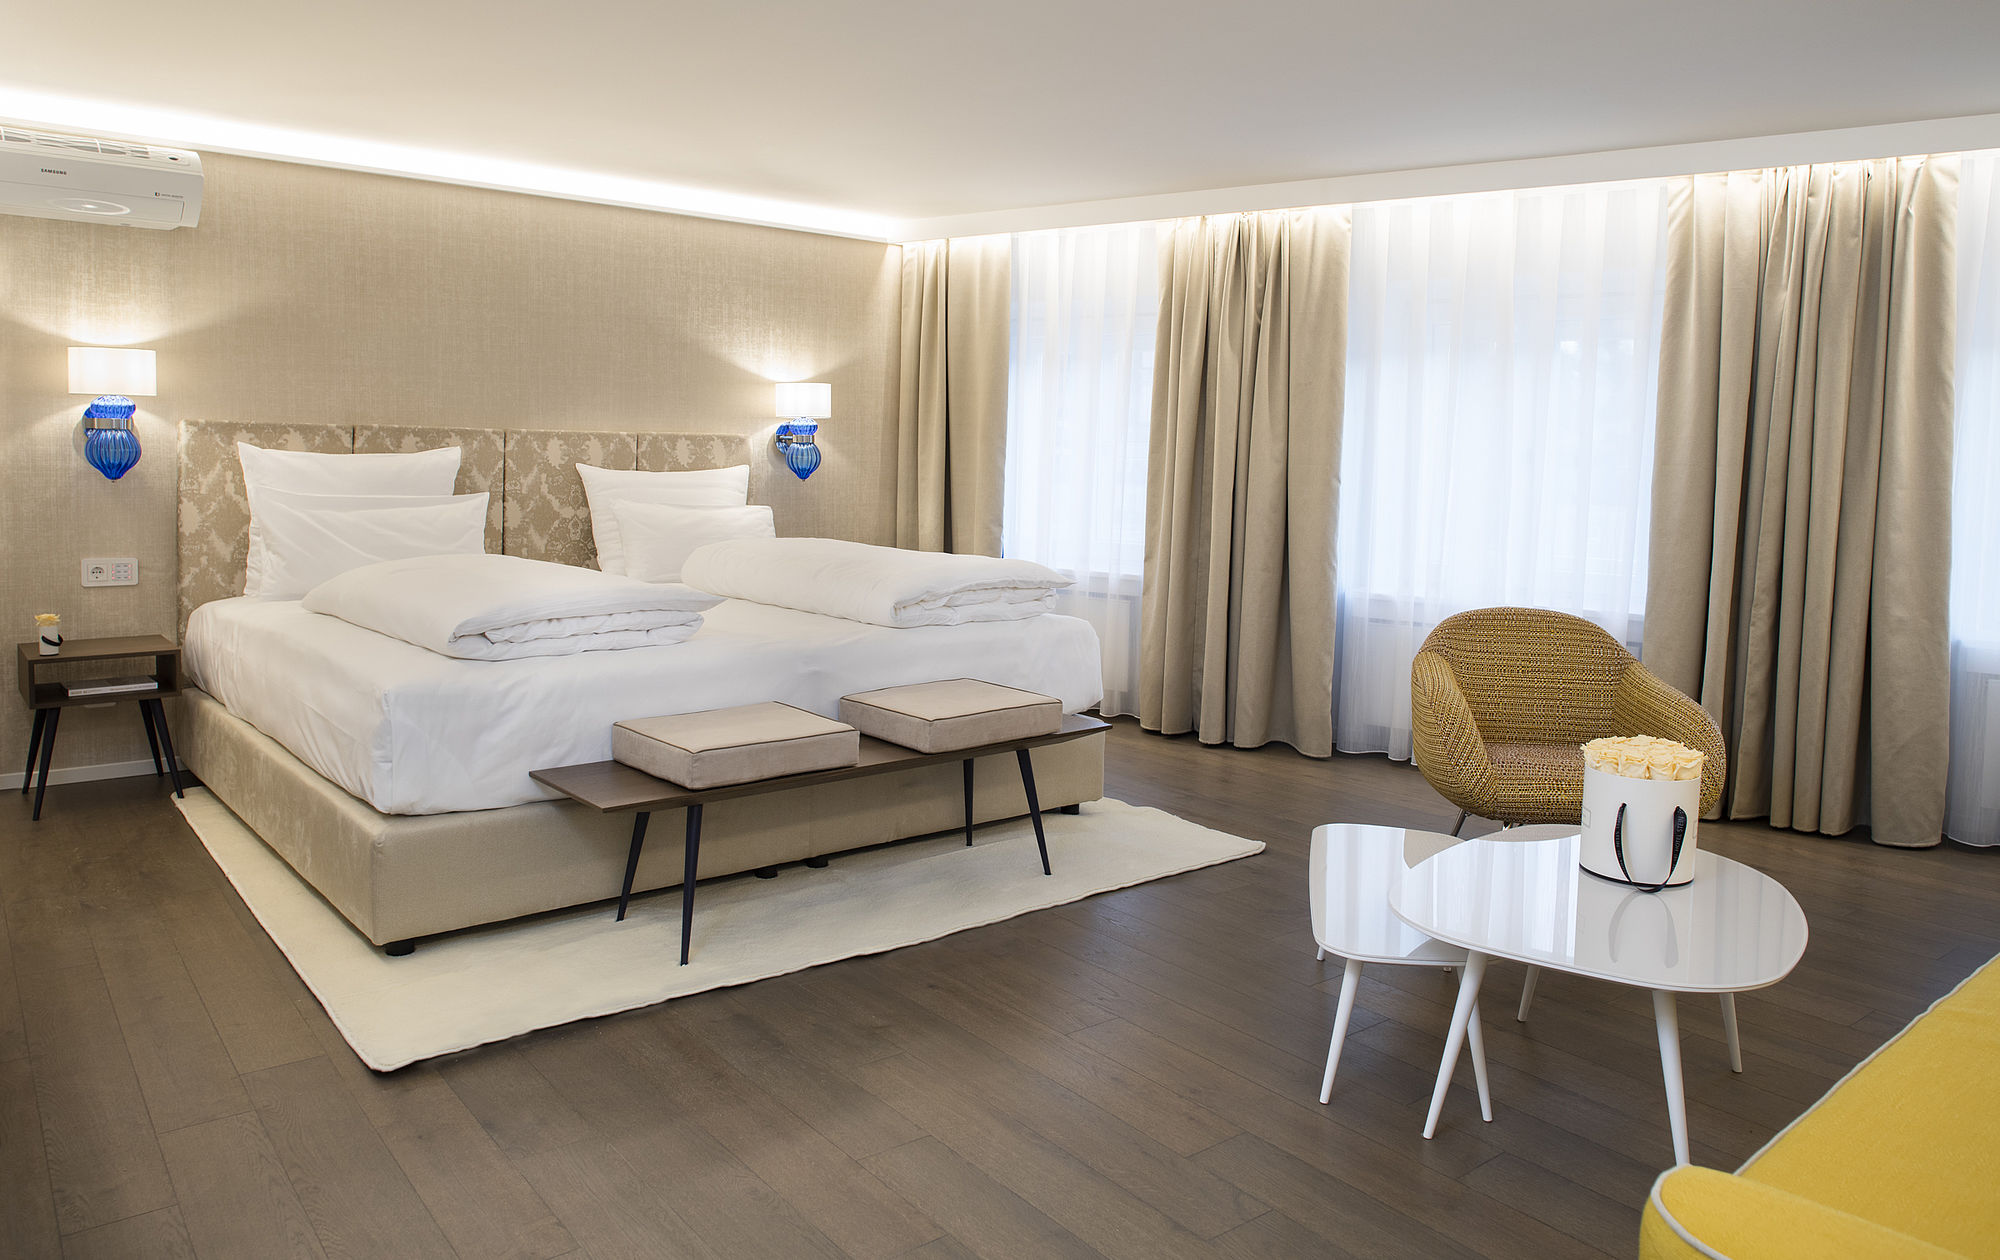 La camera da letto della suite dell'hotel in un design beige oro chiaro, grandi mobili e molto spazio aperto